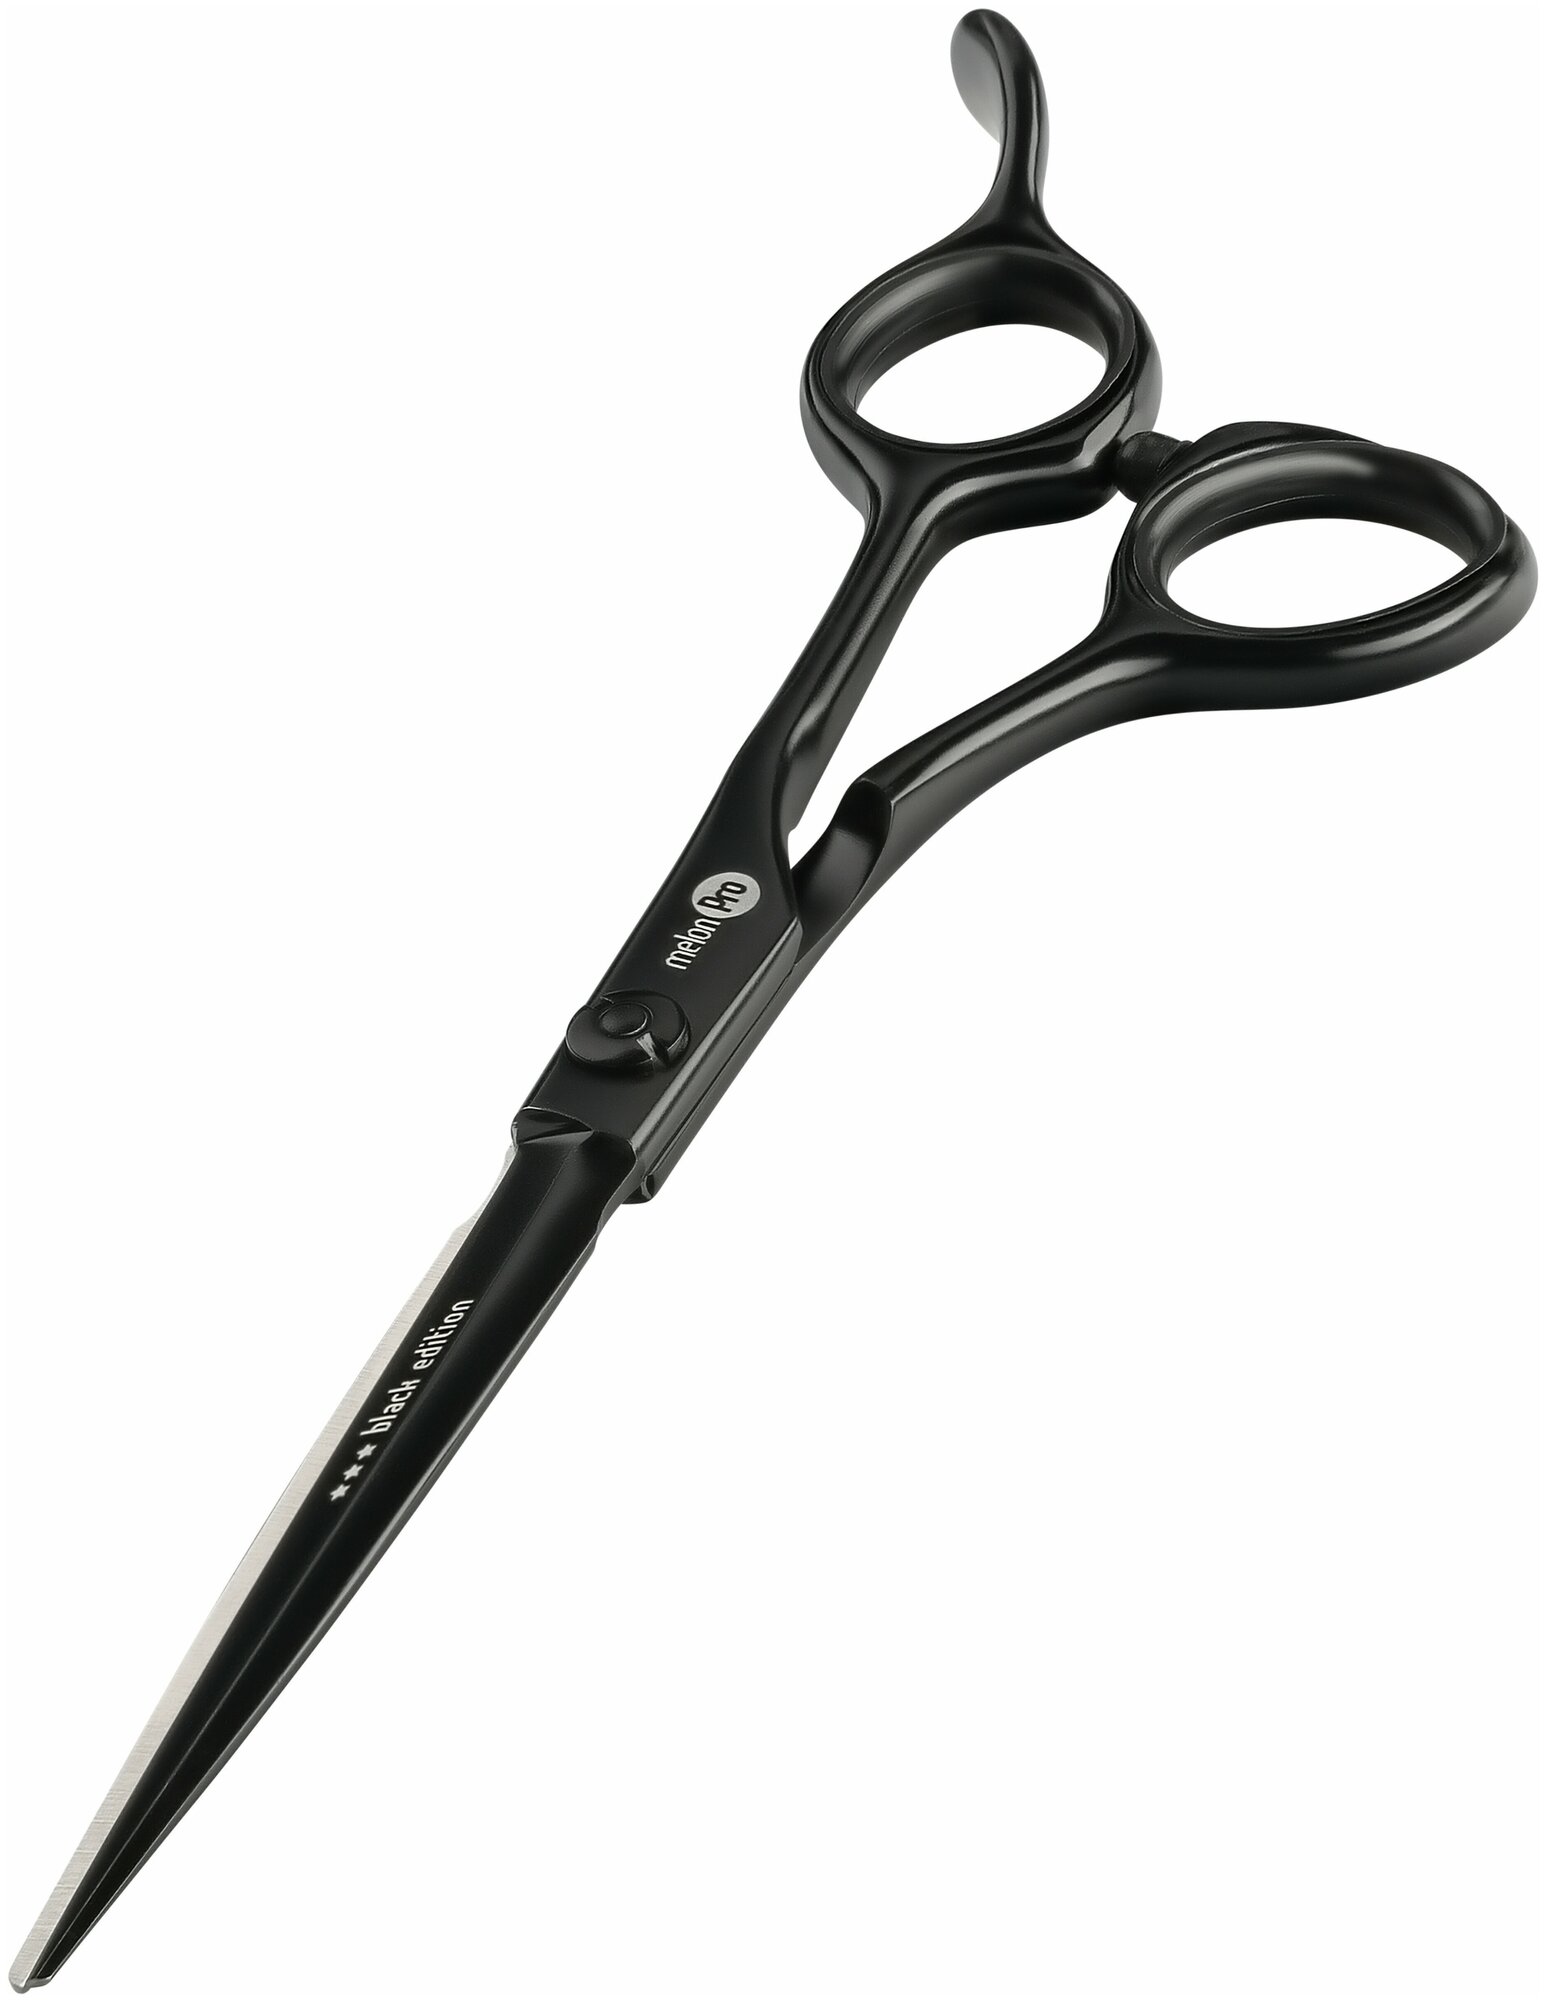 Melon Pro 6.0" ножницы парикмахерские прямые эргономичные Black Edition